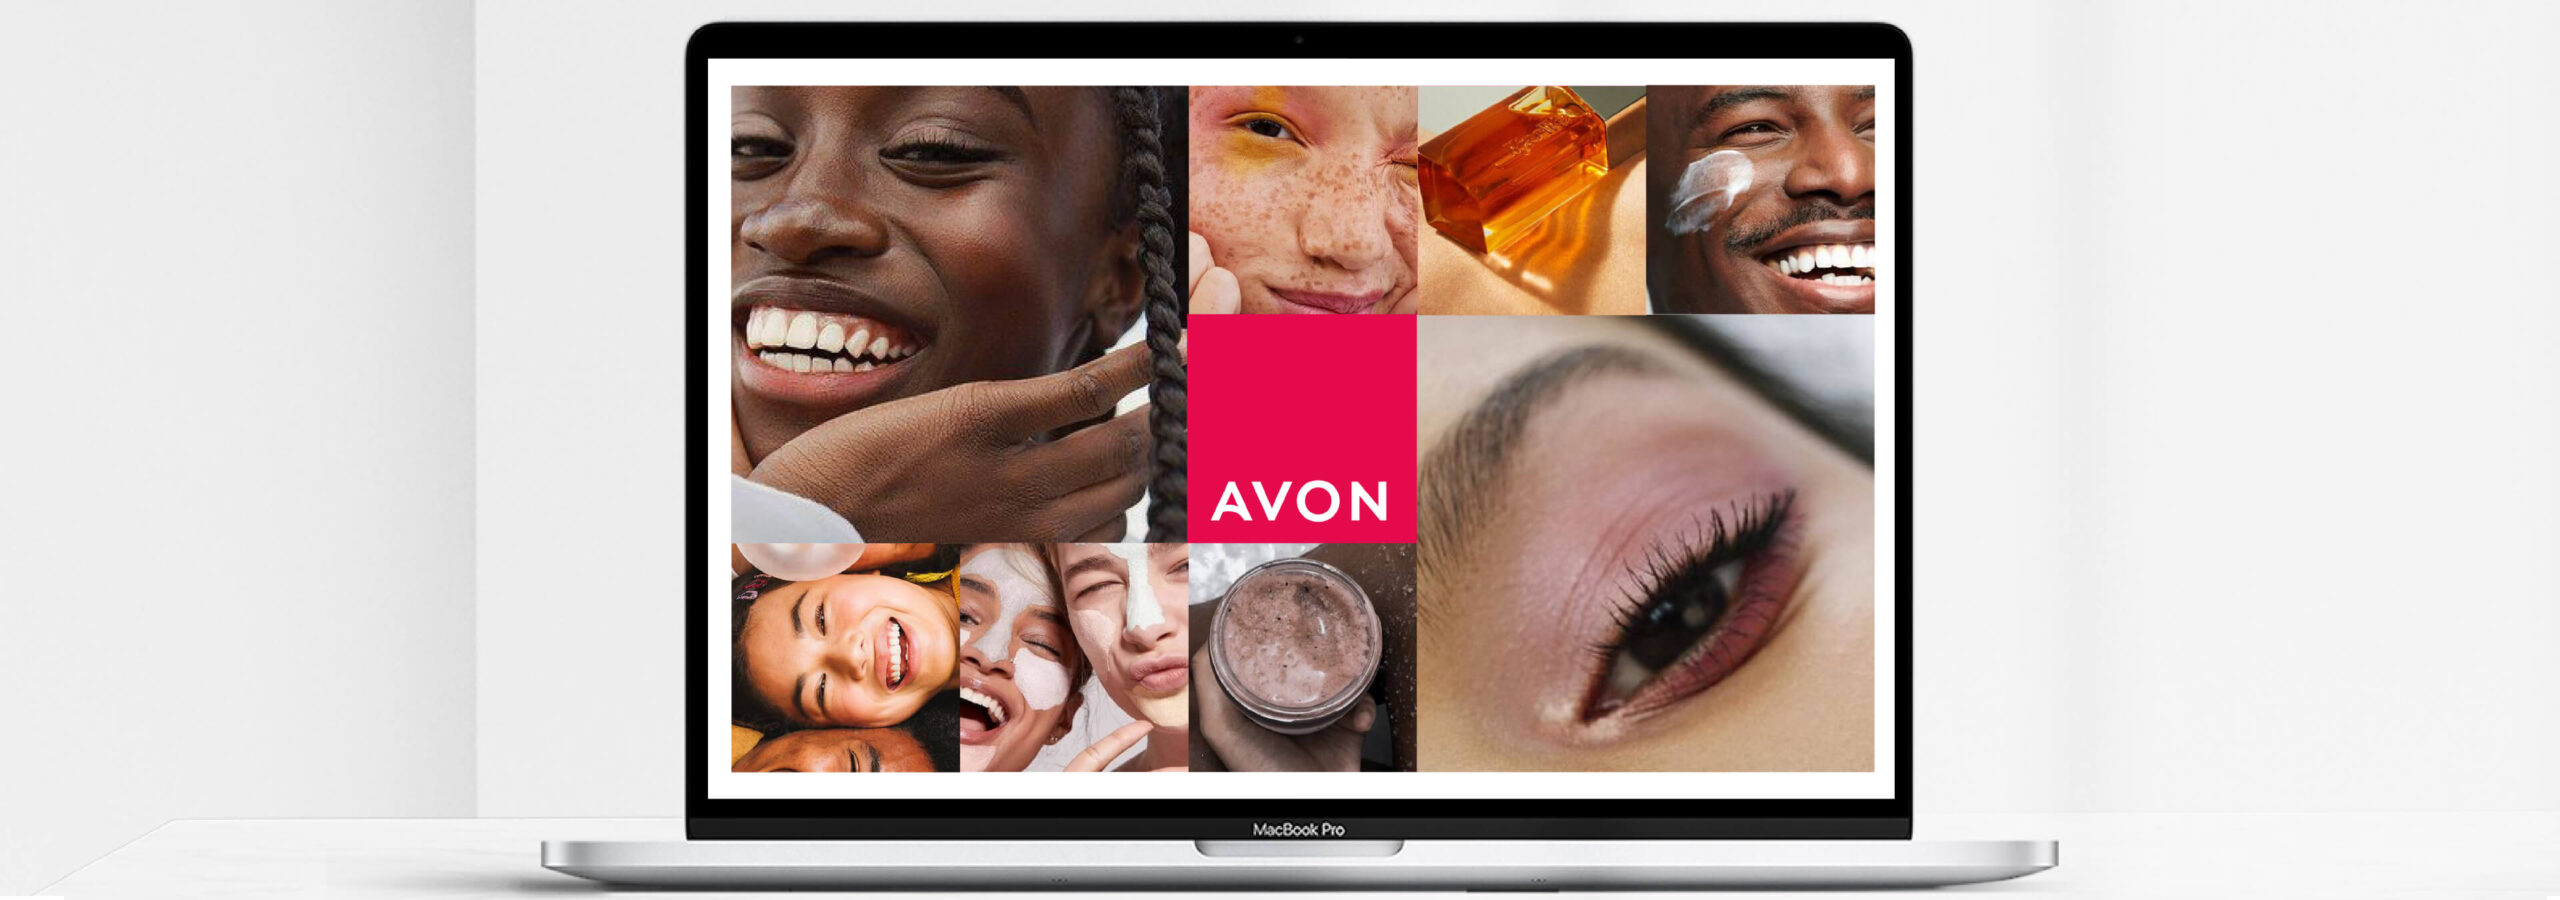 Avon website design